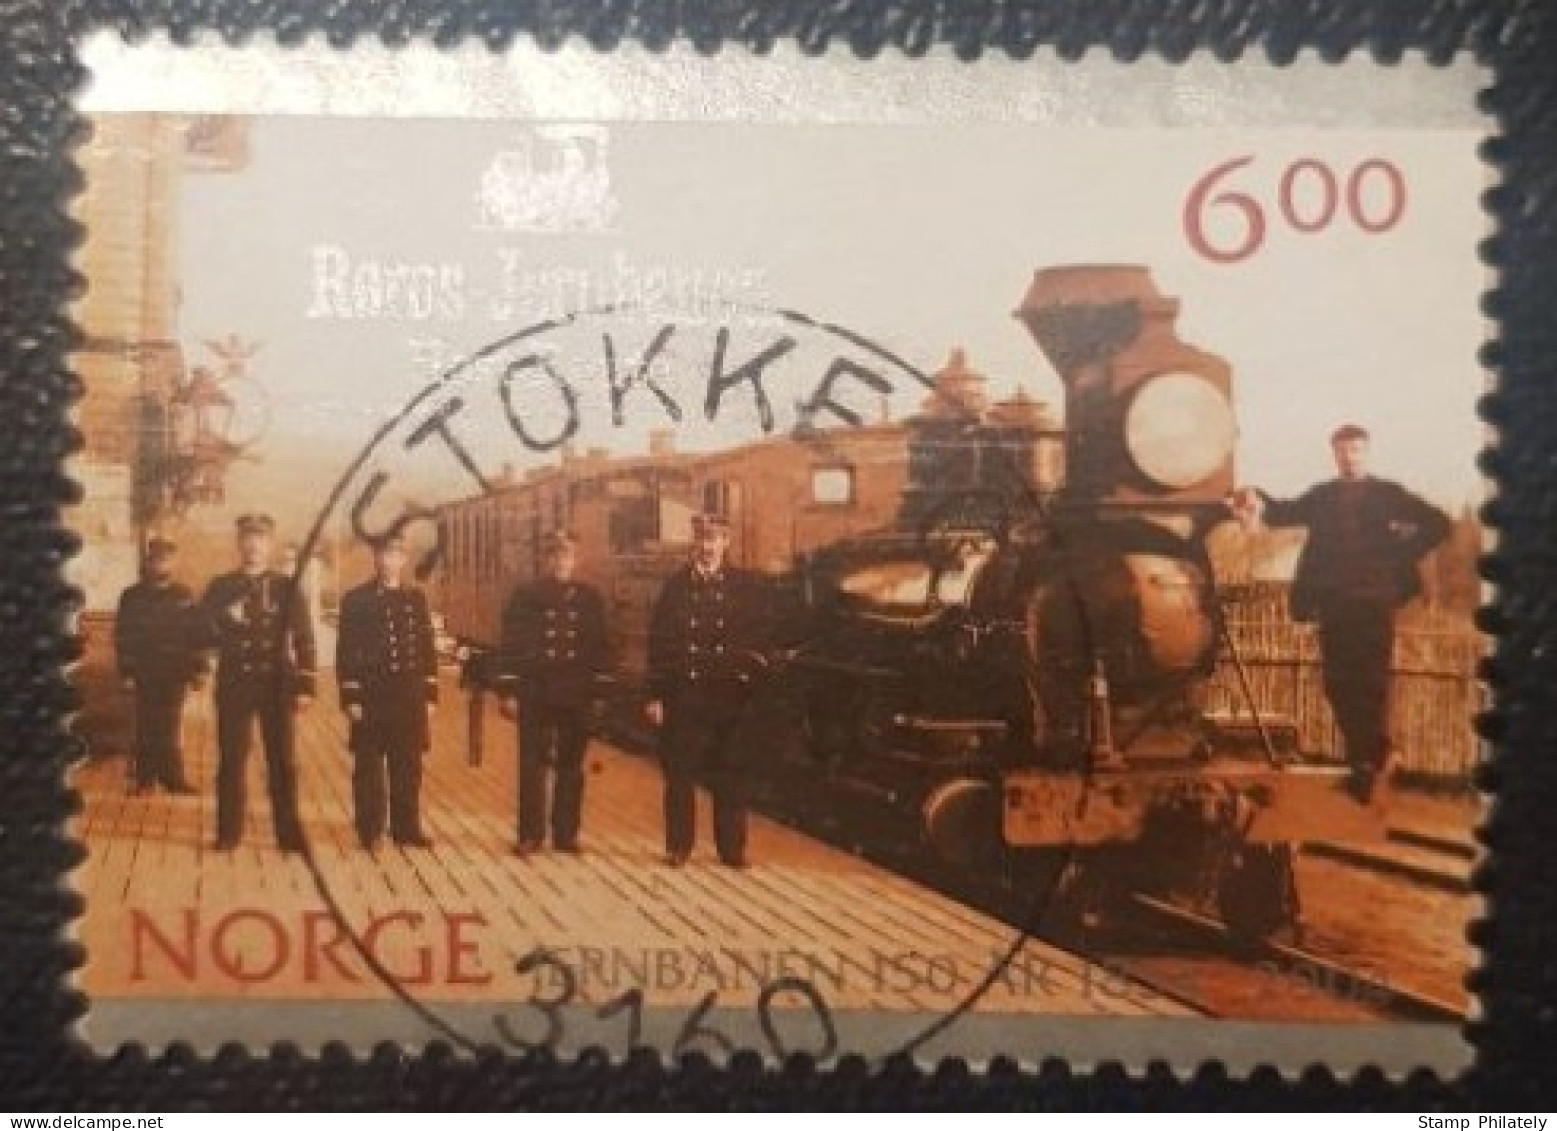 Norway 6Kr Used Postmark Stamp Railway Stokke Cancel - Used Stamps